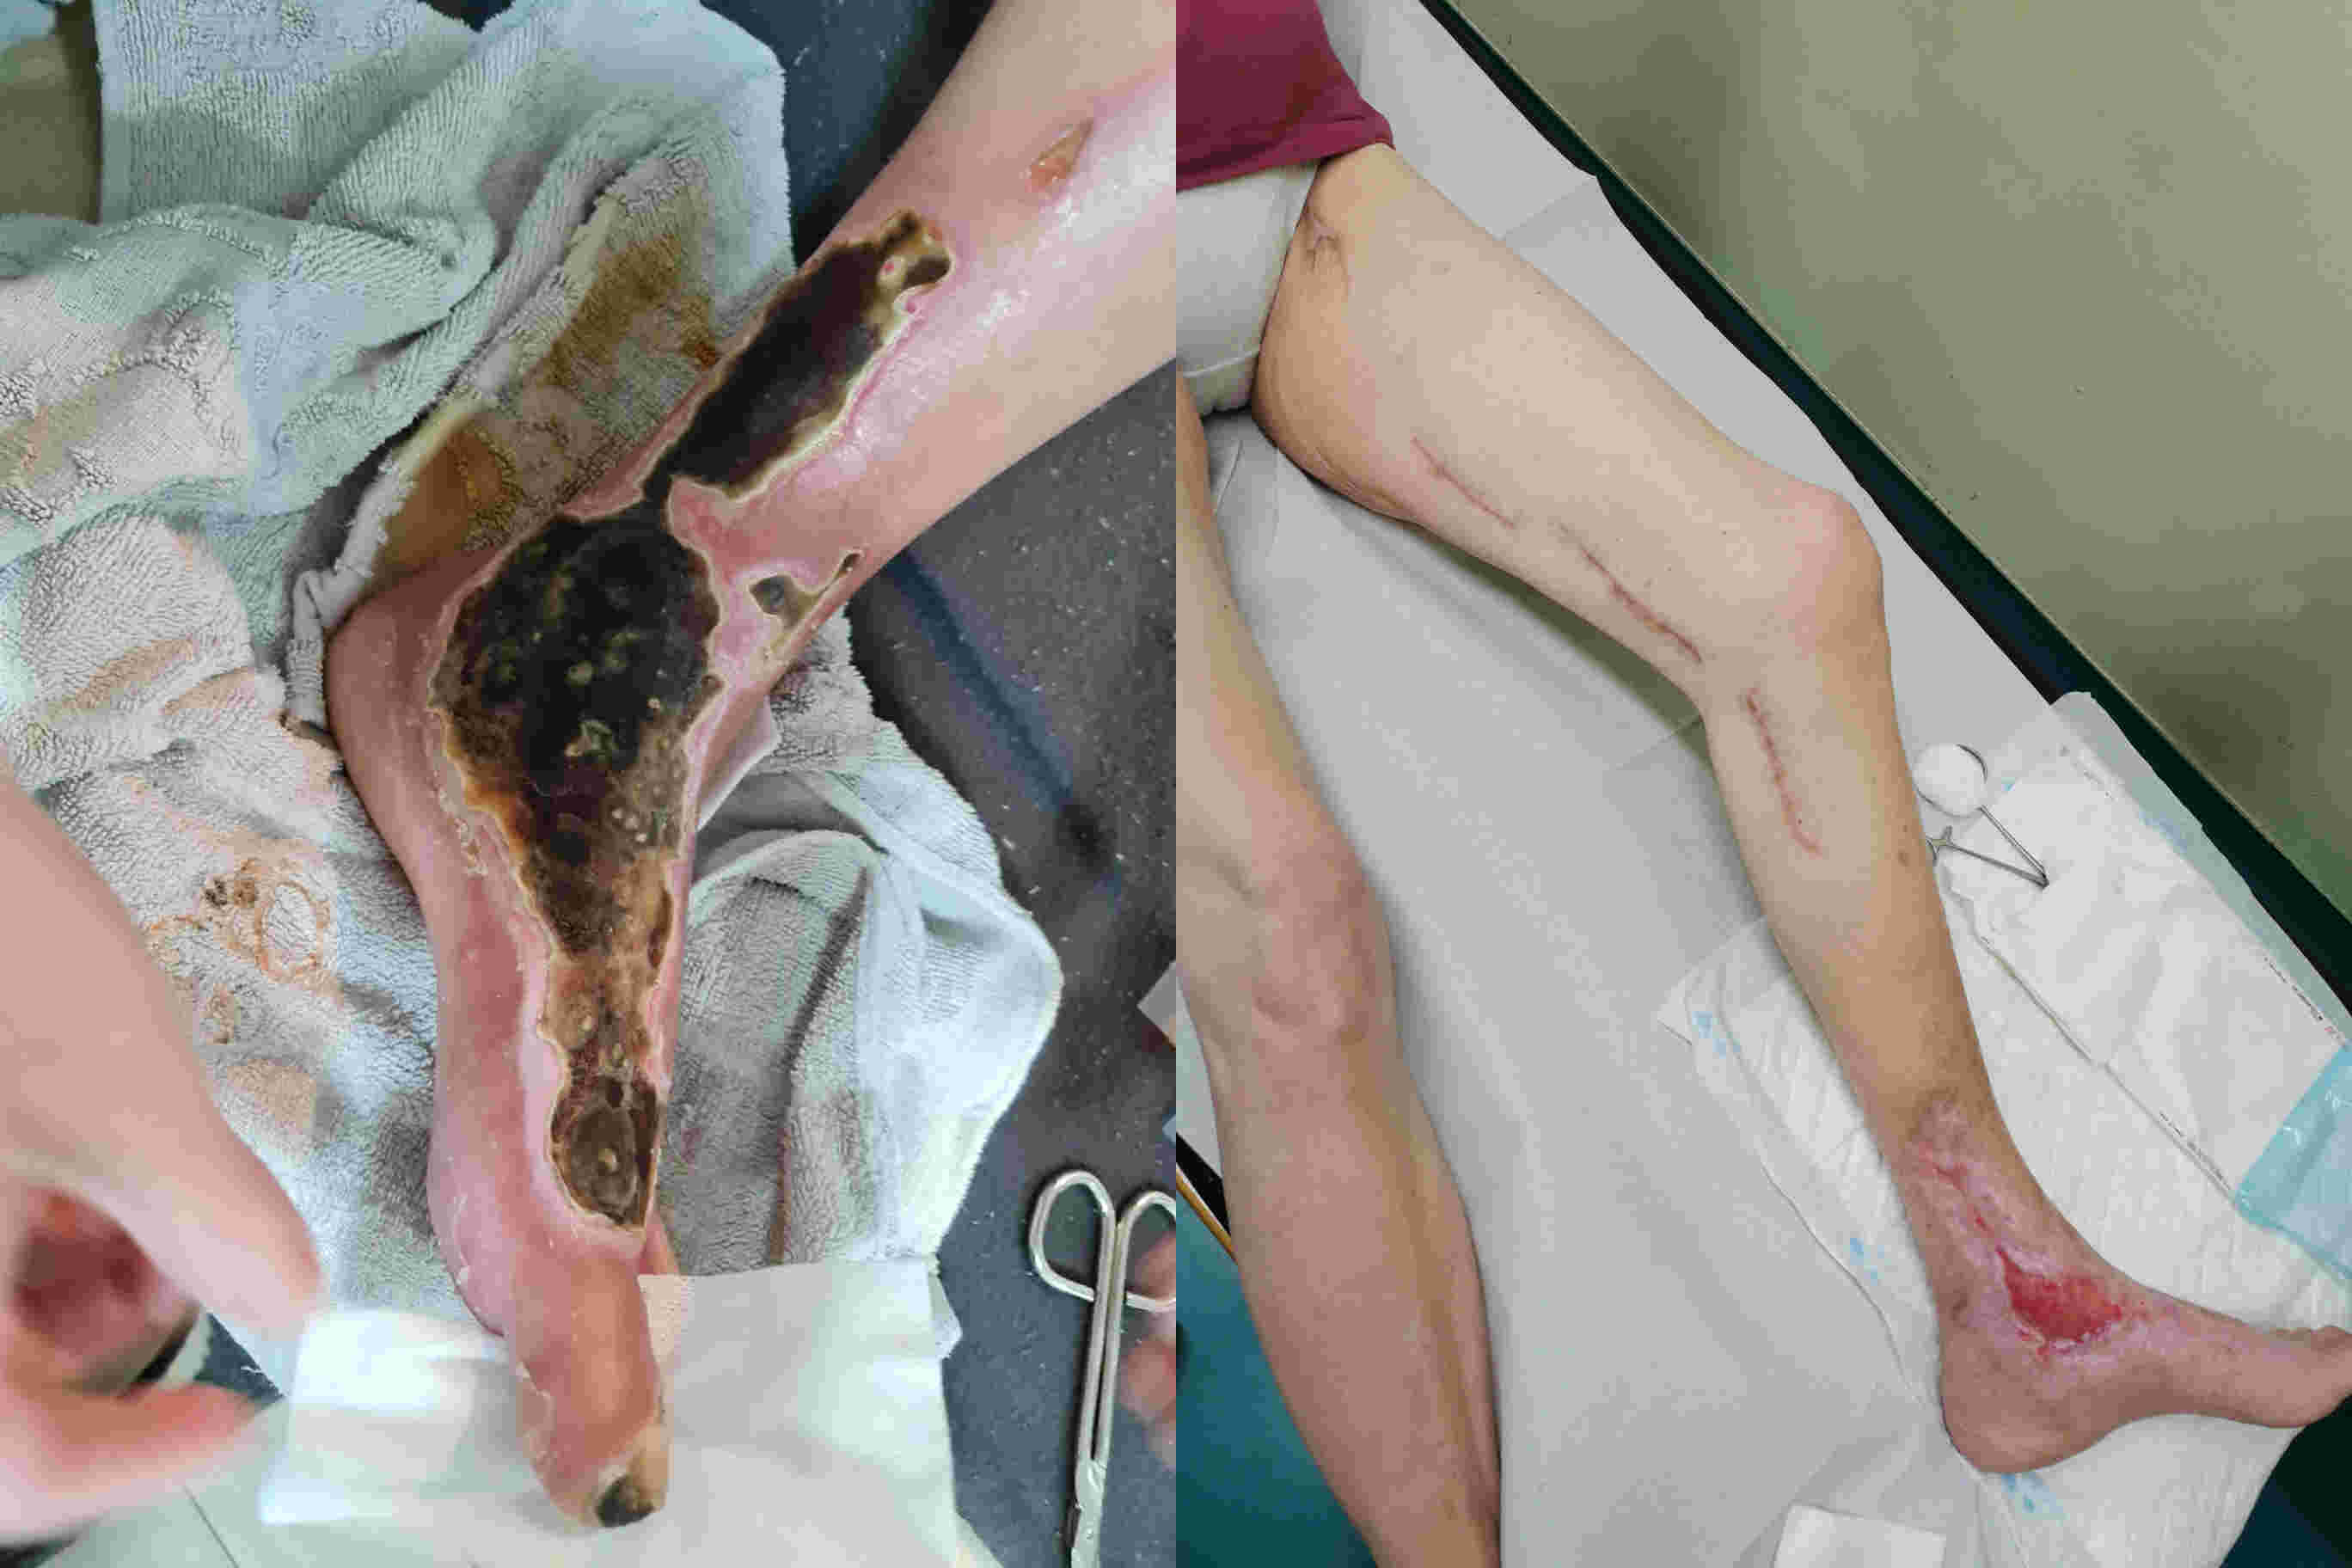 Potem, ko se je znašla noga tik pred amputacijskim posego, je obvodna žilno kirurška operacija rešila nogo in dolgoročno tudi bolnico.